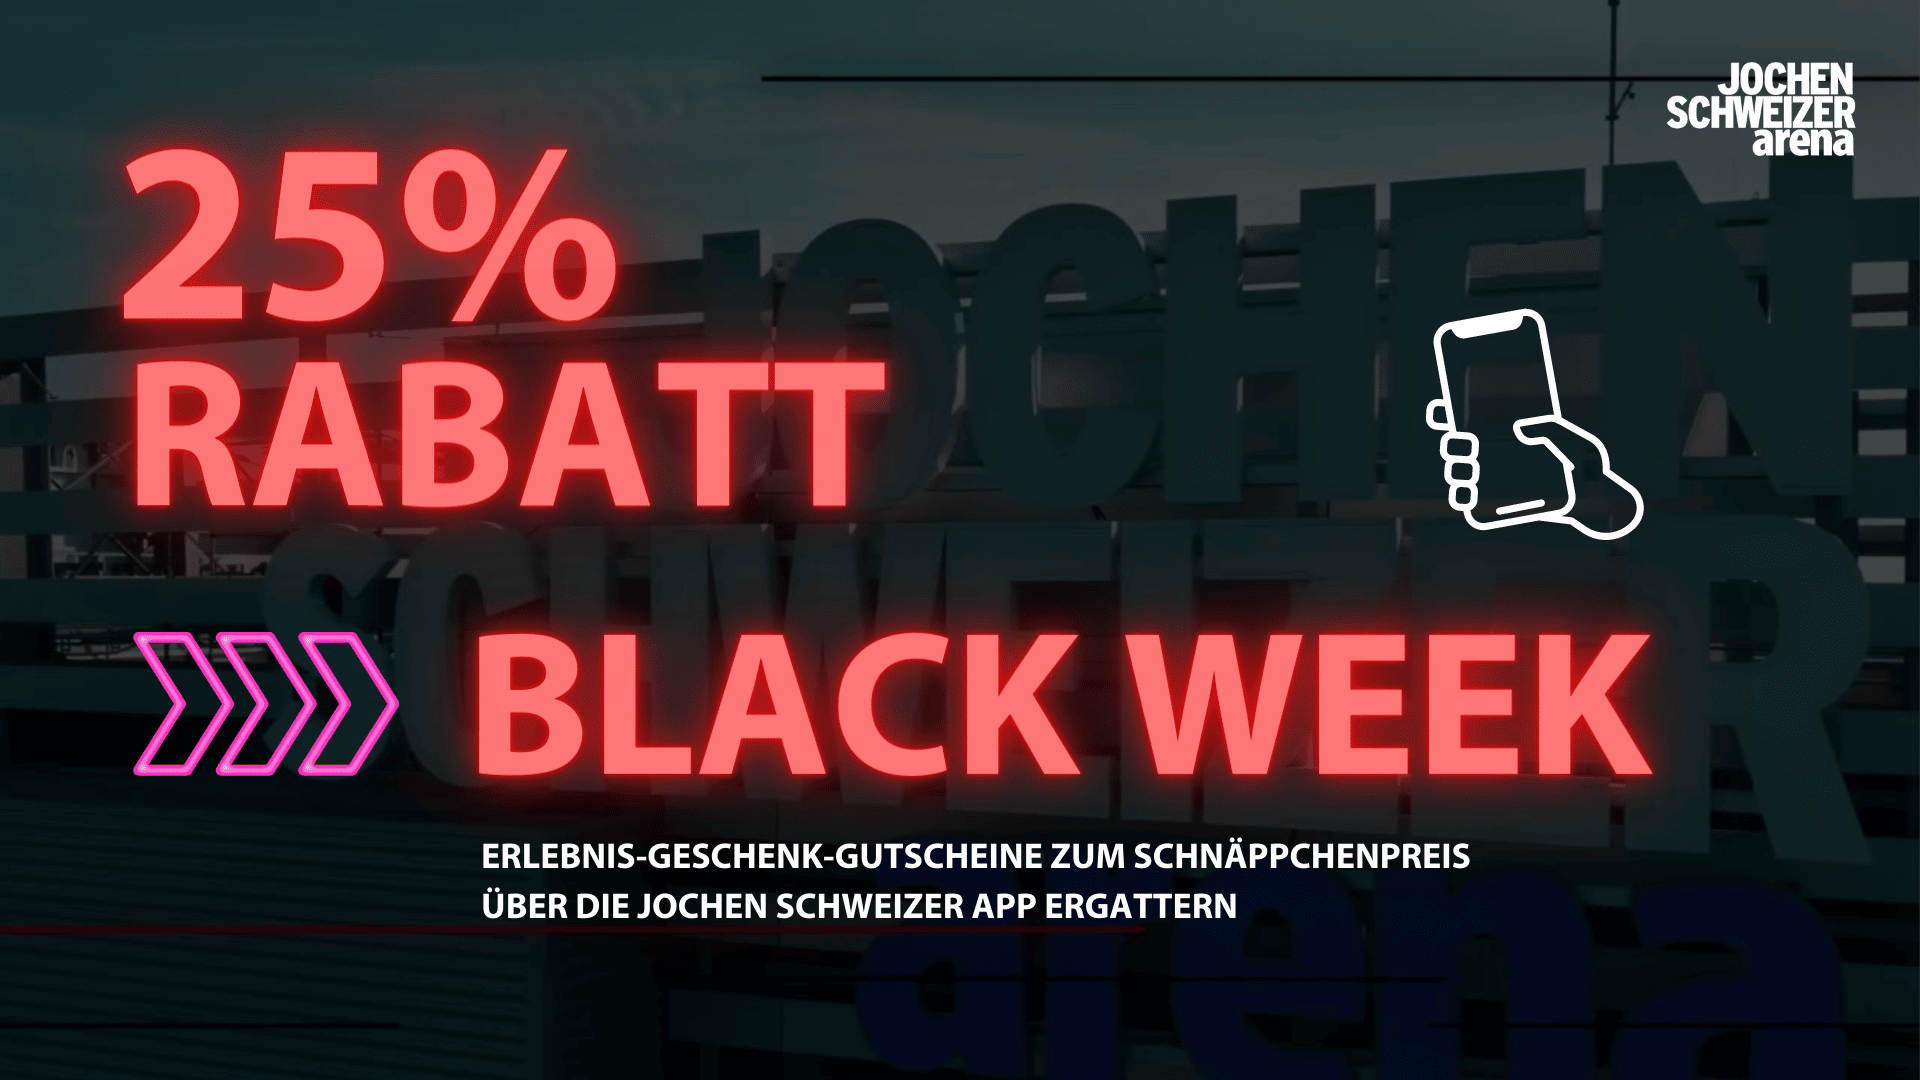 Black Week Aktion2022 Jochen schweizer Arena 1920 × 500 px 1920 × 1080